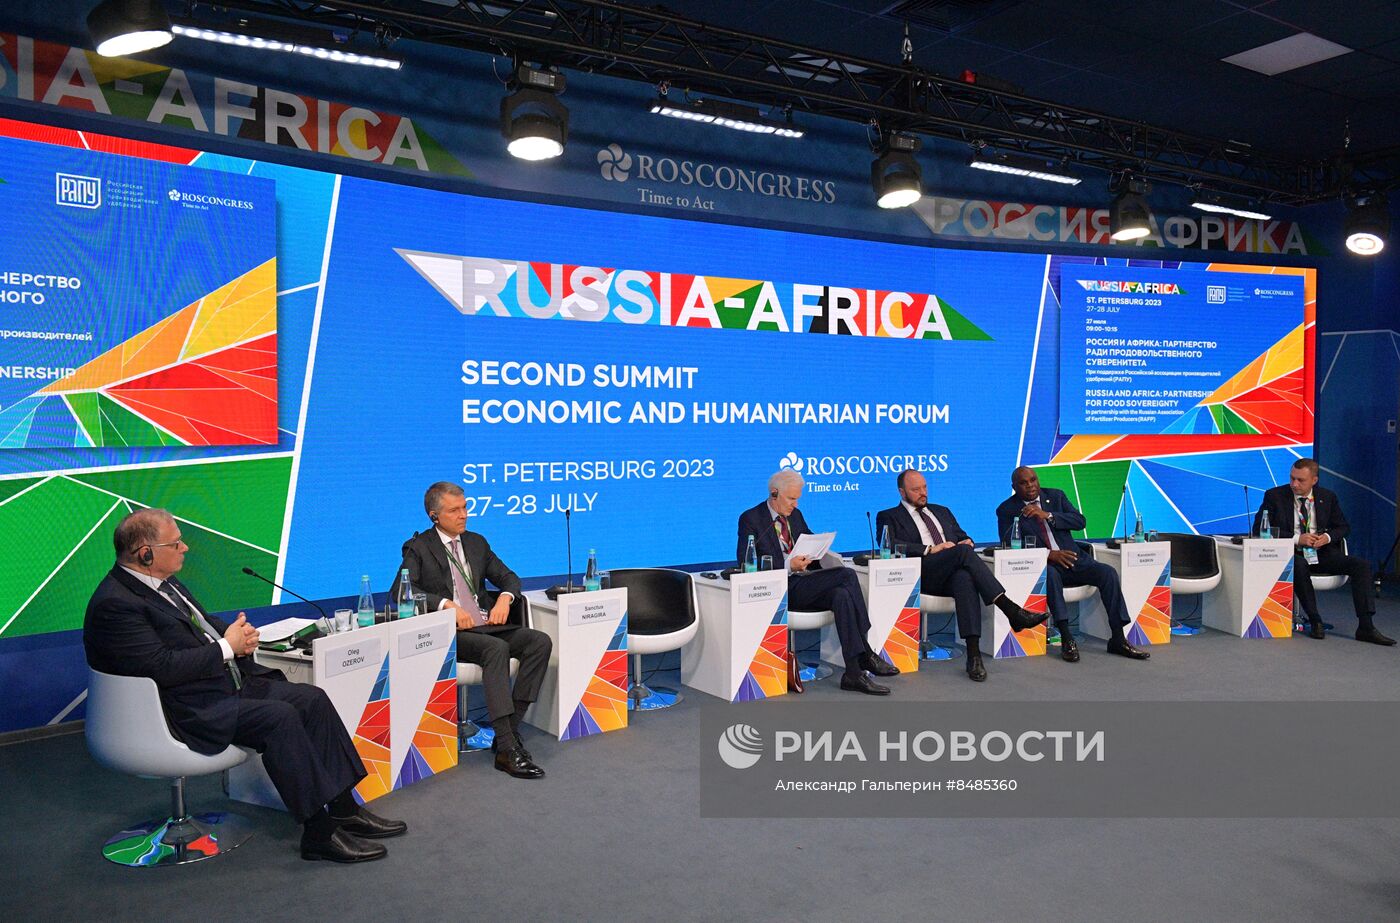  II Cаммит и форум "Россия - Африка". Россия и Африка: партнерство ради продовольственного суверенитета 